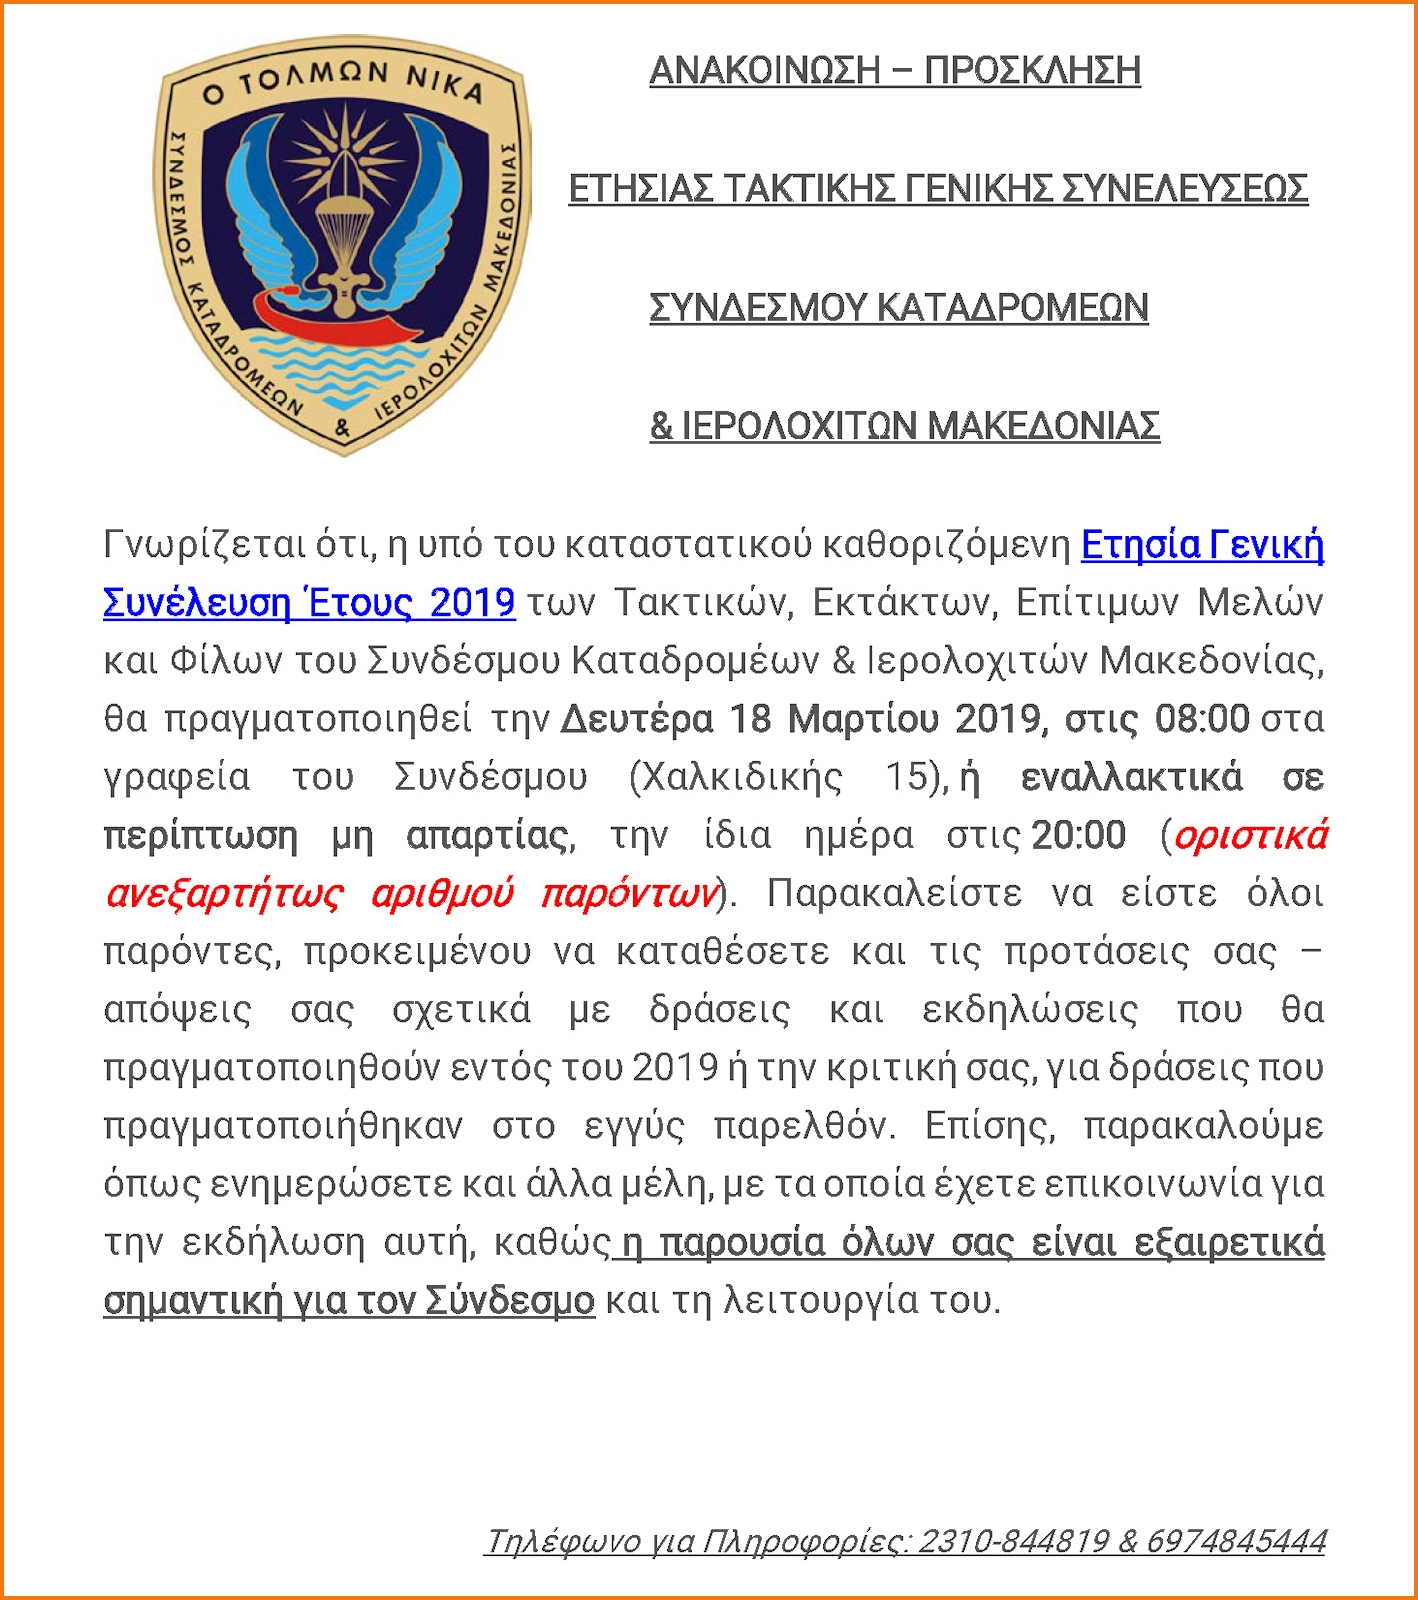 Ετήσια Γενική Συνέλευση Έτους 2019 Συνδέσμου Καταδρομέων & Ιερολοχιτών Μακεδονίας (ΑΝΑΚΟΙΝΩΣΗ) - Φωτογραφία 1